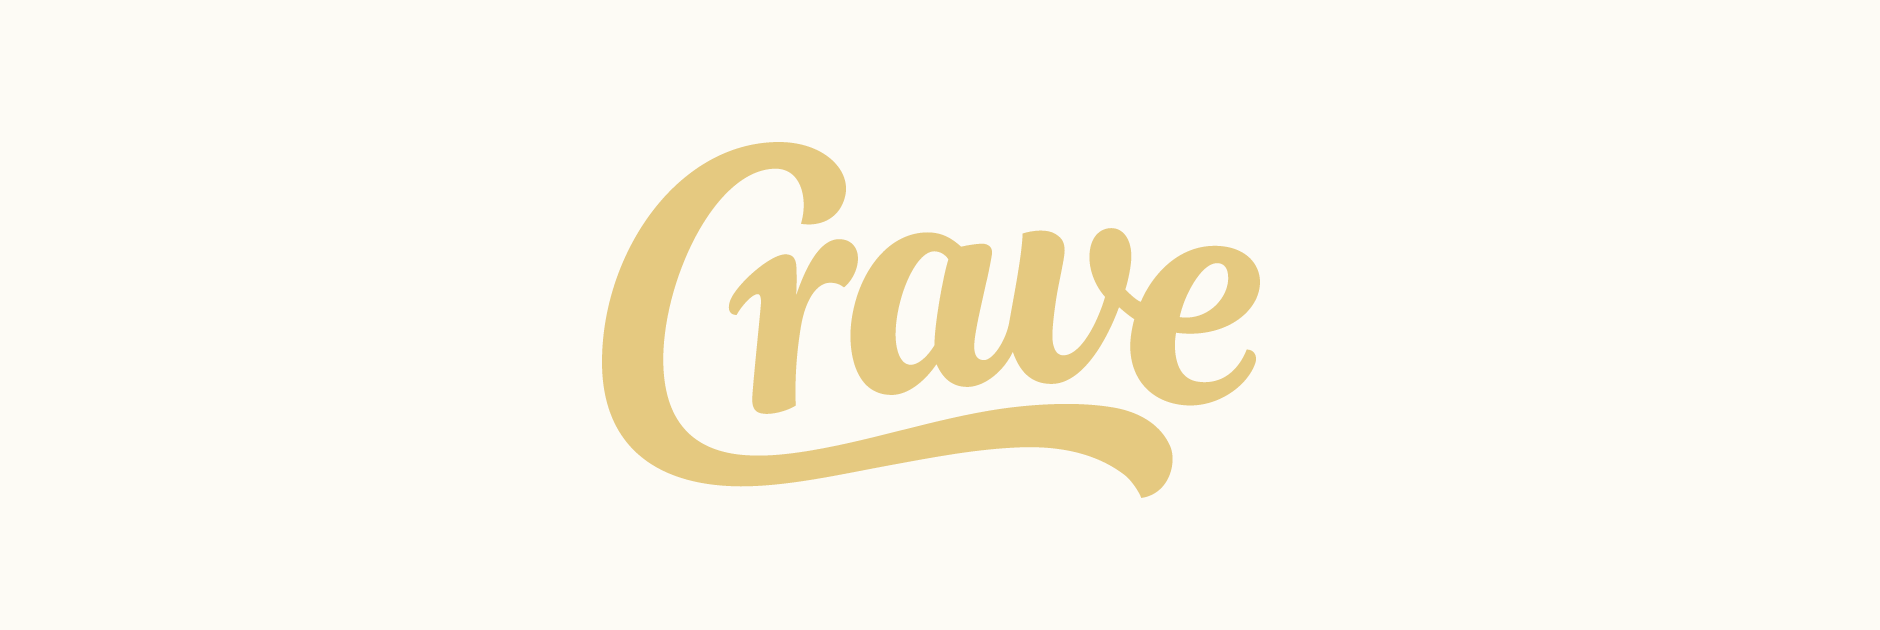 Claire Coullon // Crave